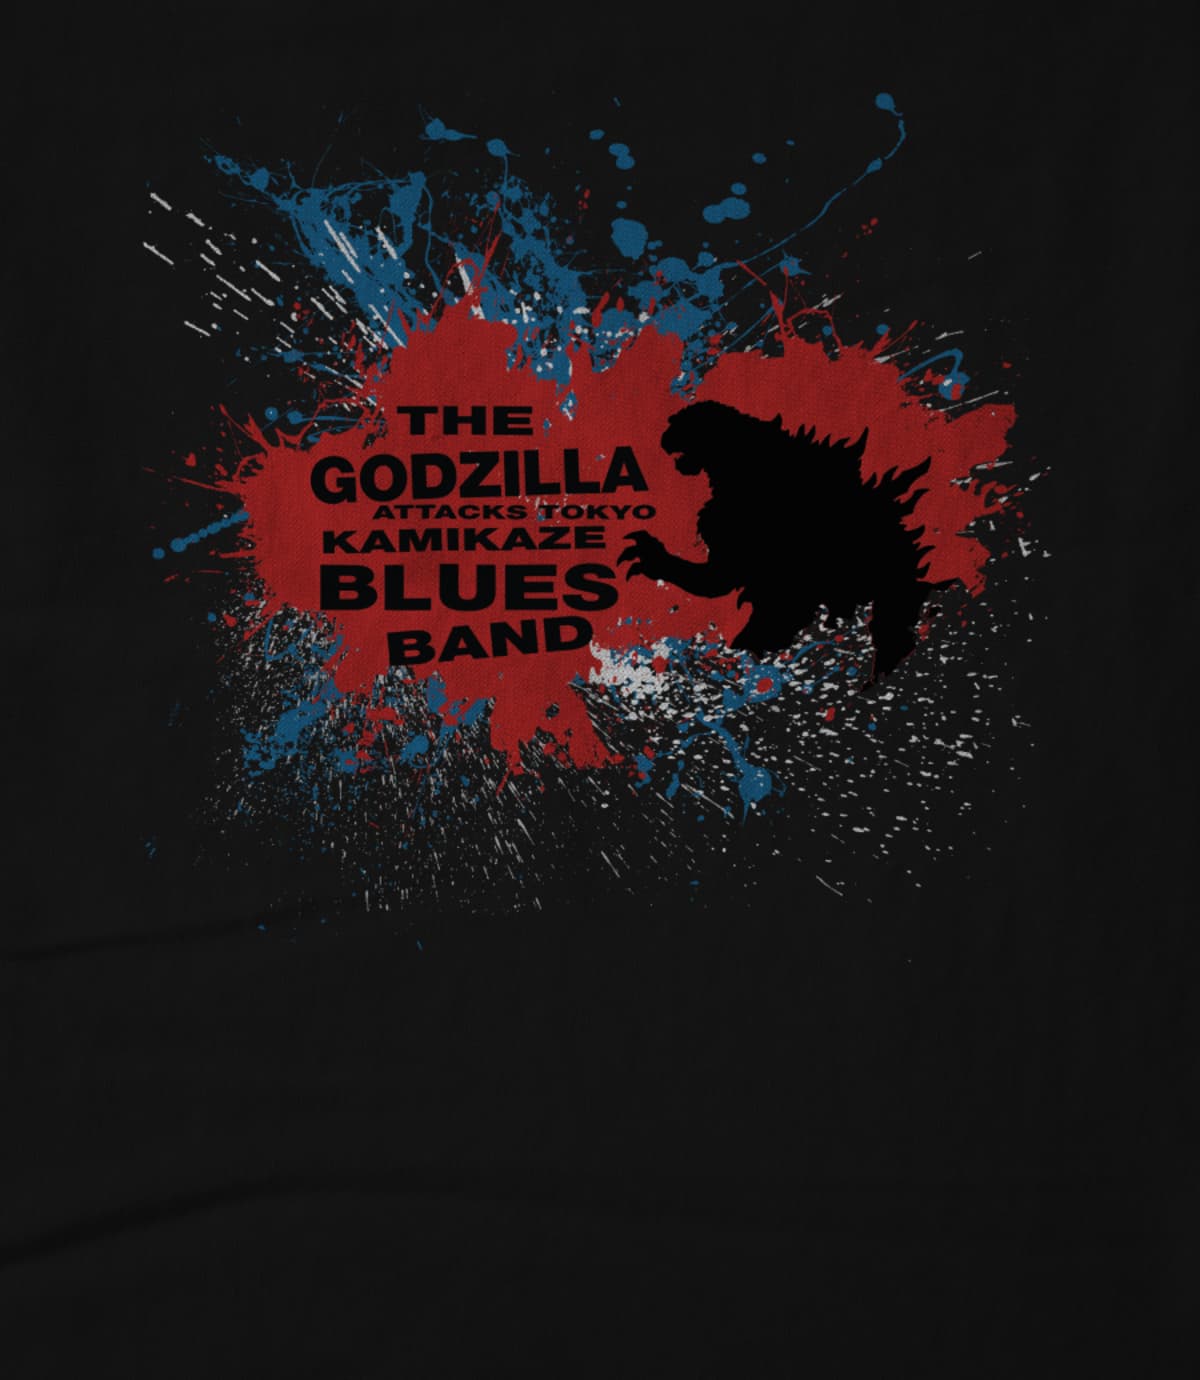 The Godzilla Attacks Tokyo Kamikaze Blues Band 